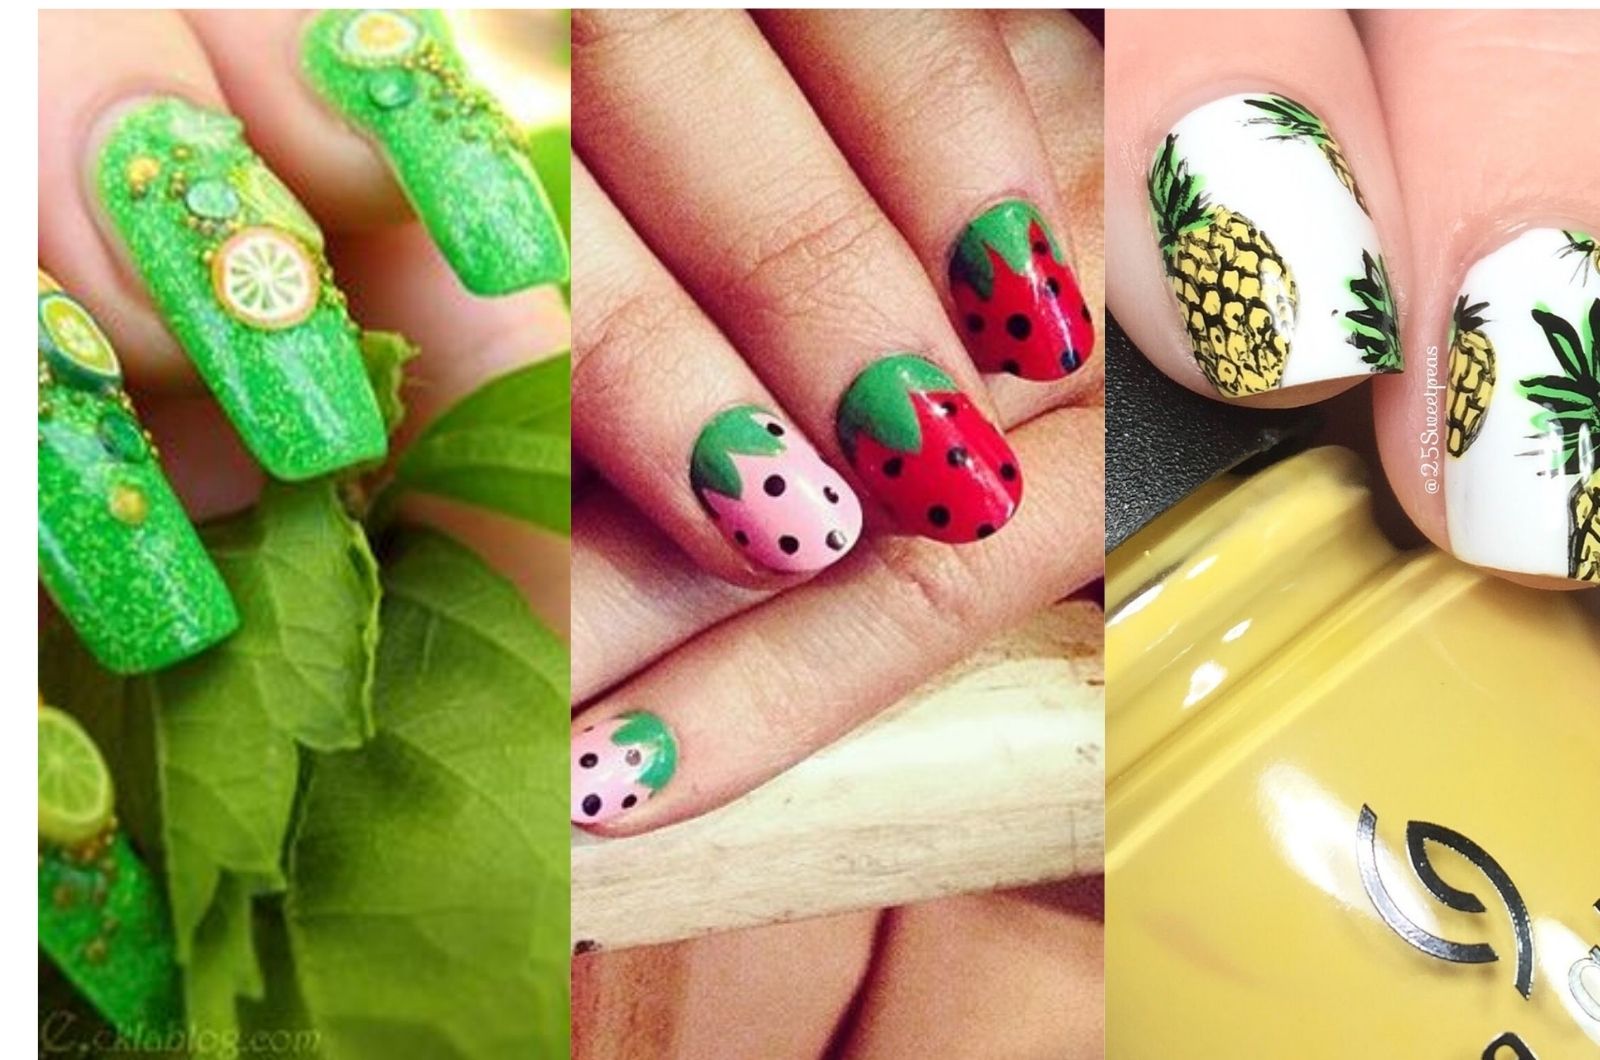 Diseños de uñas frutales para ponerle color y sabor a tus manos